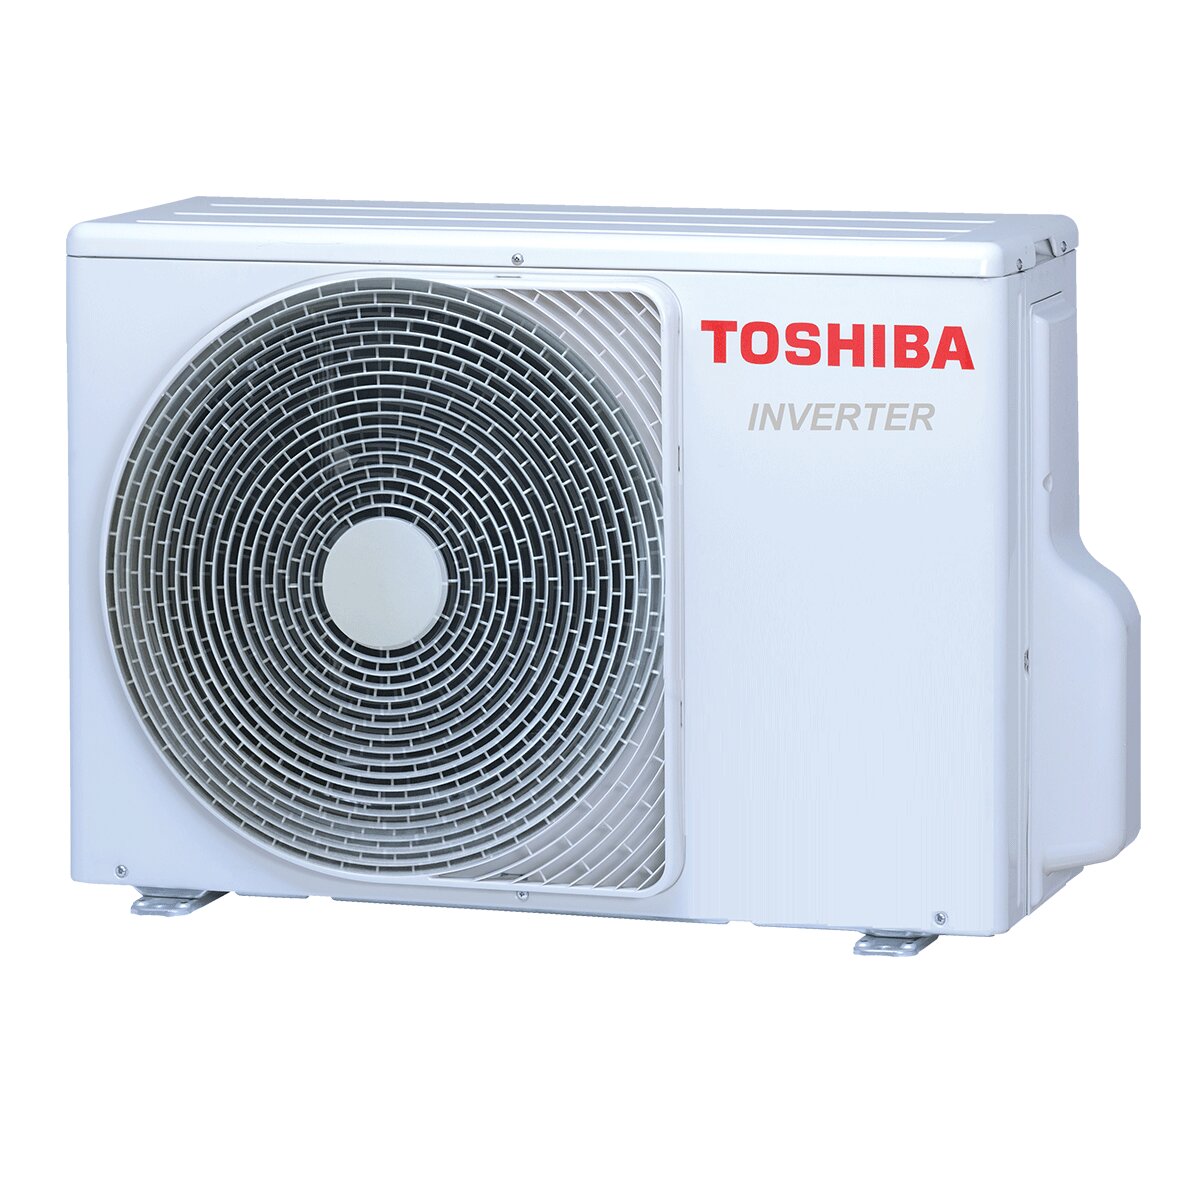 Toshiba Haori Klimaanlage 16000 BTU R32 A++ Wechselrichter mit WLAN